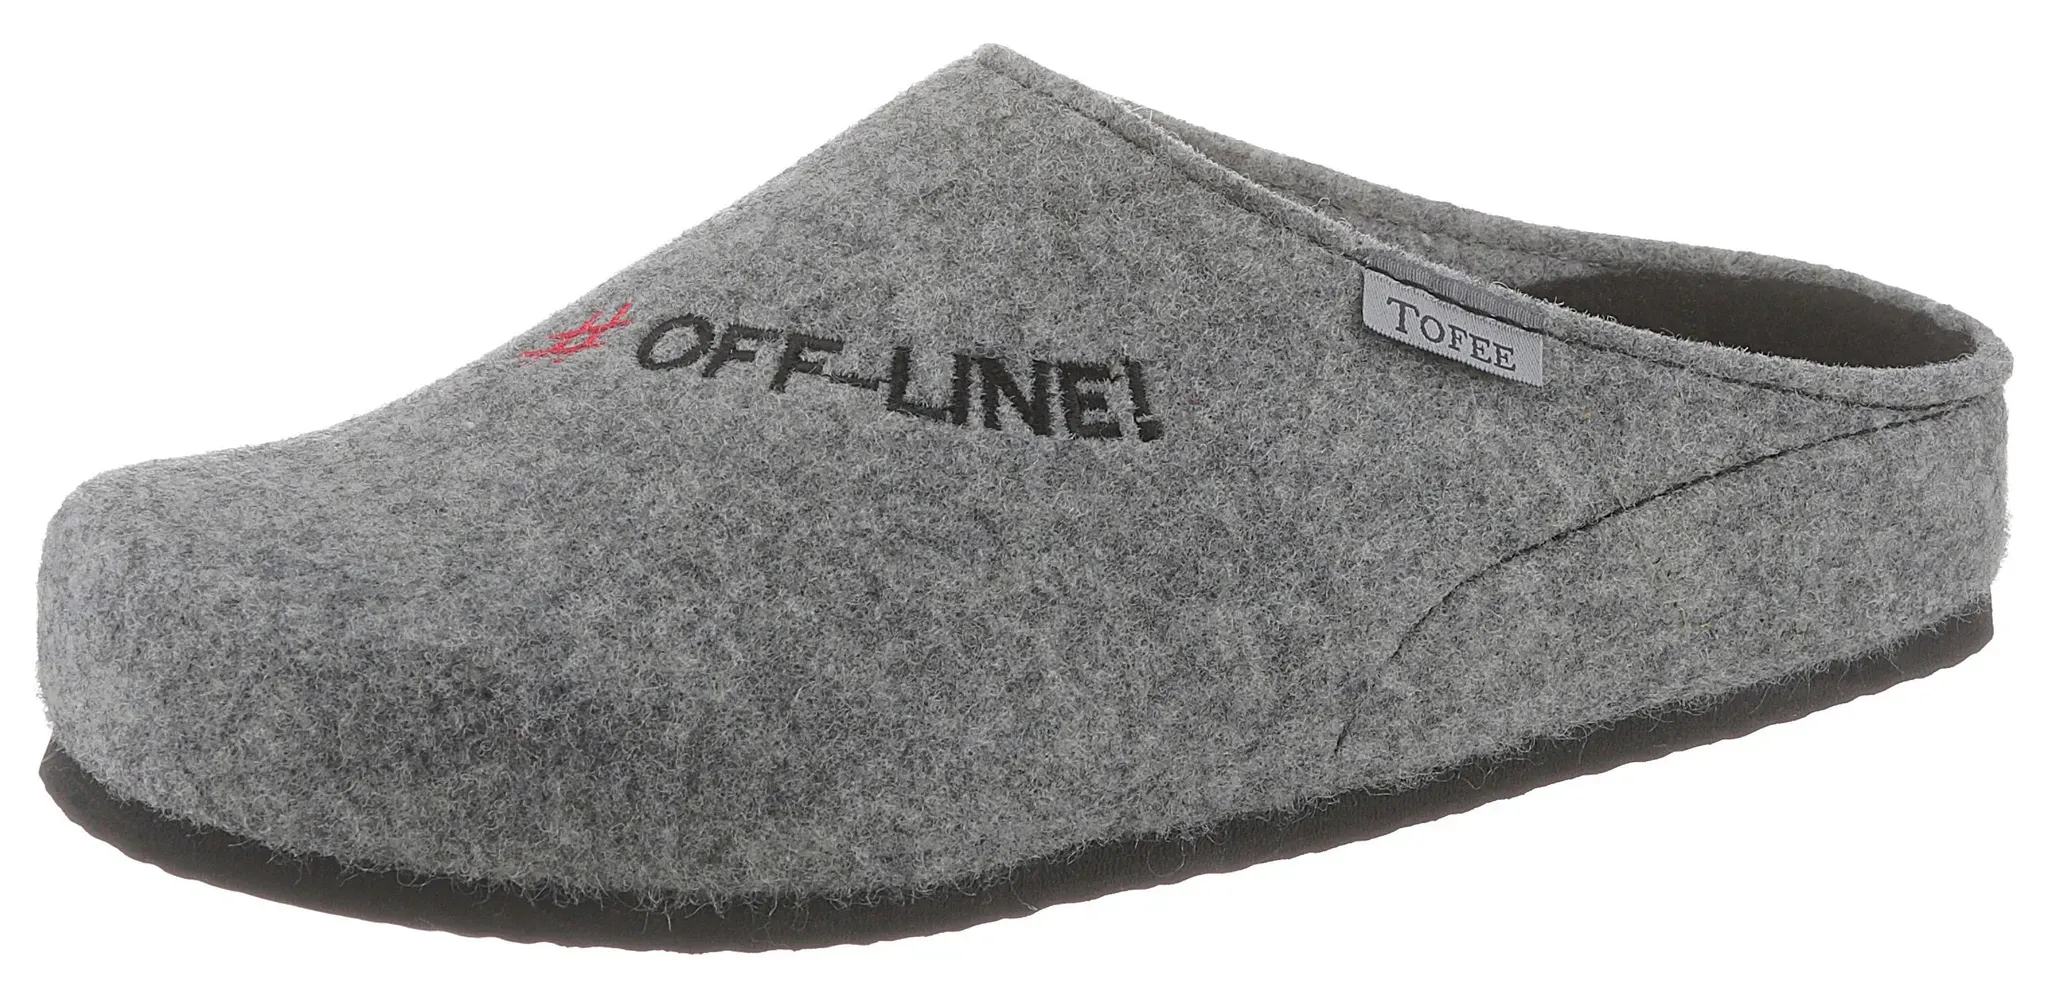 Pantoffel TOFEE Gr. 40, grau (grau, meliert) Herren Schuhe Hausschuhe mit Schriftzug "Off-Line"